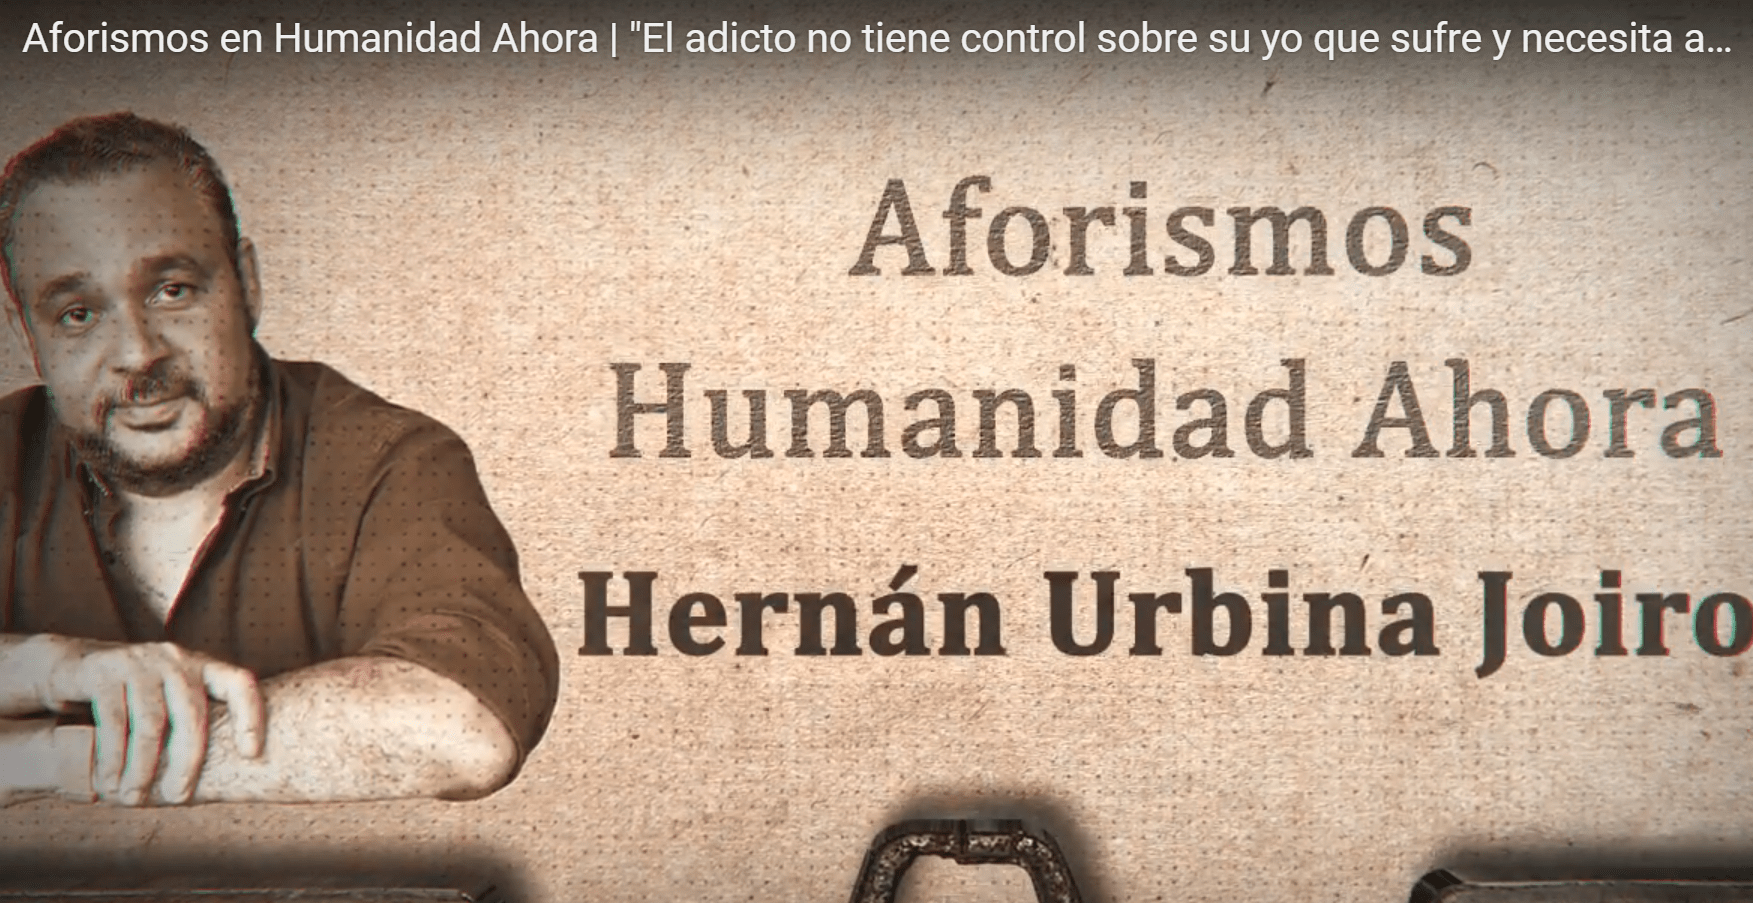 Hernán Urbina Joiro humanista